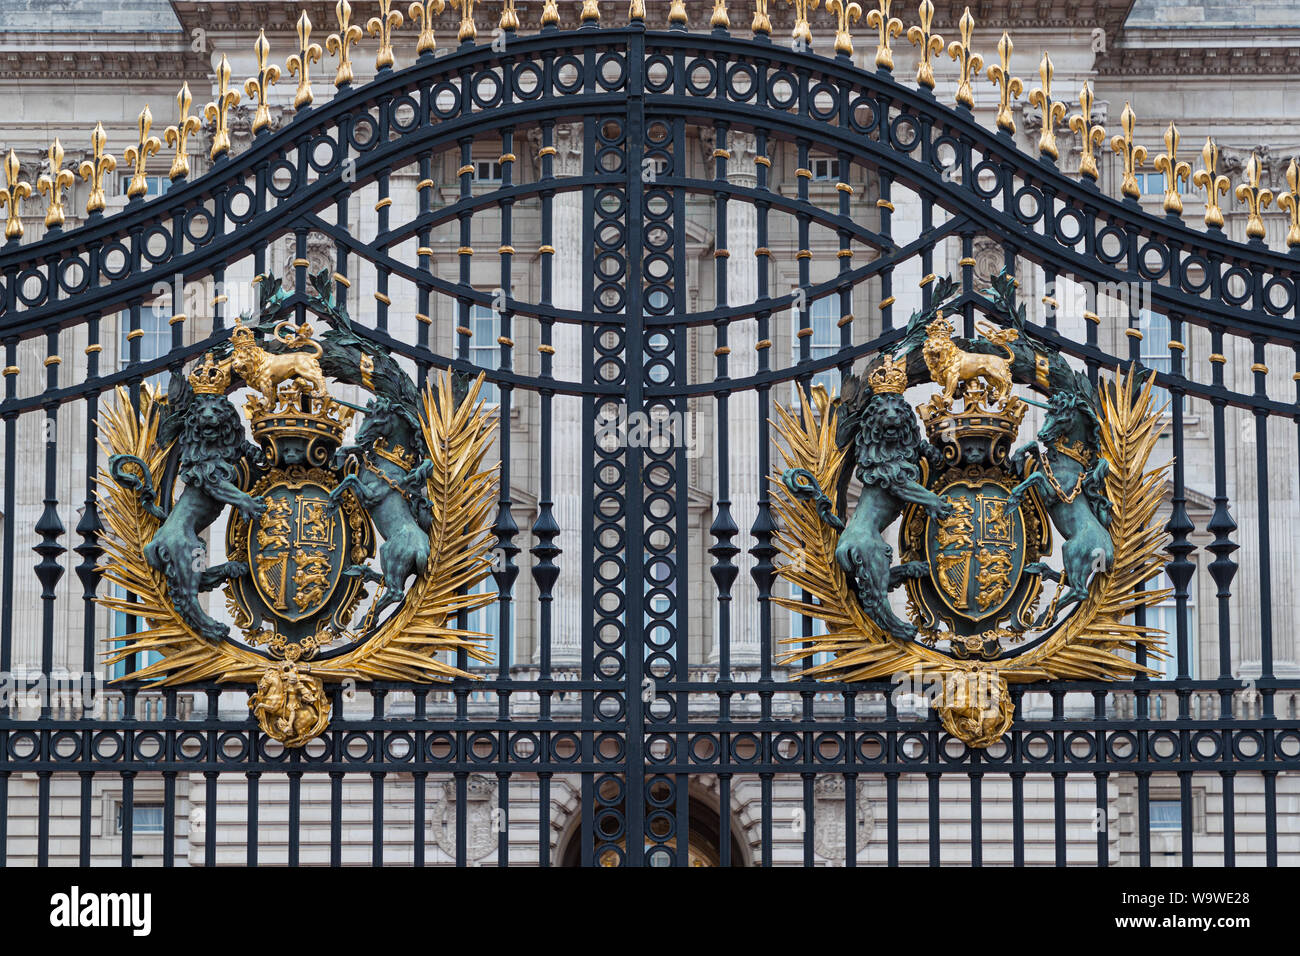 Royal crest on the gates of Buckingham Palace, London, England Stock Photo